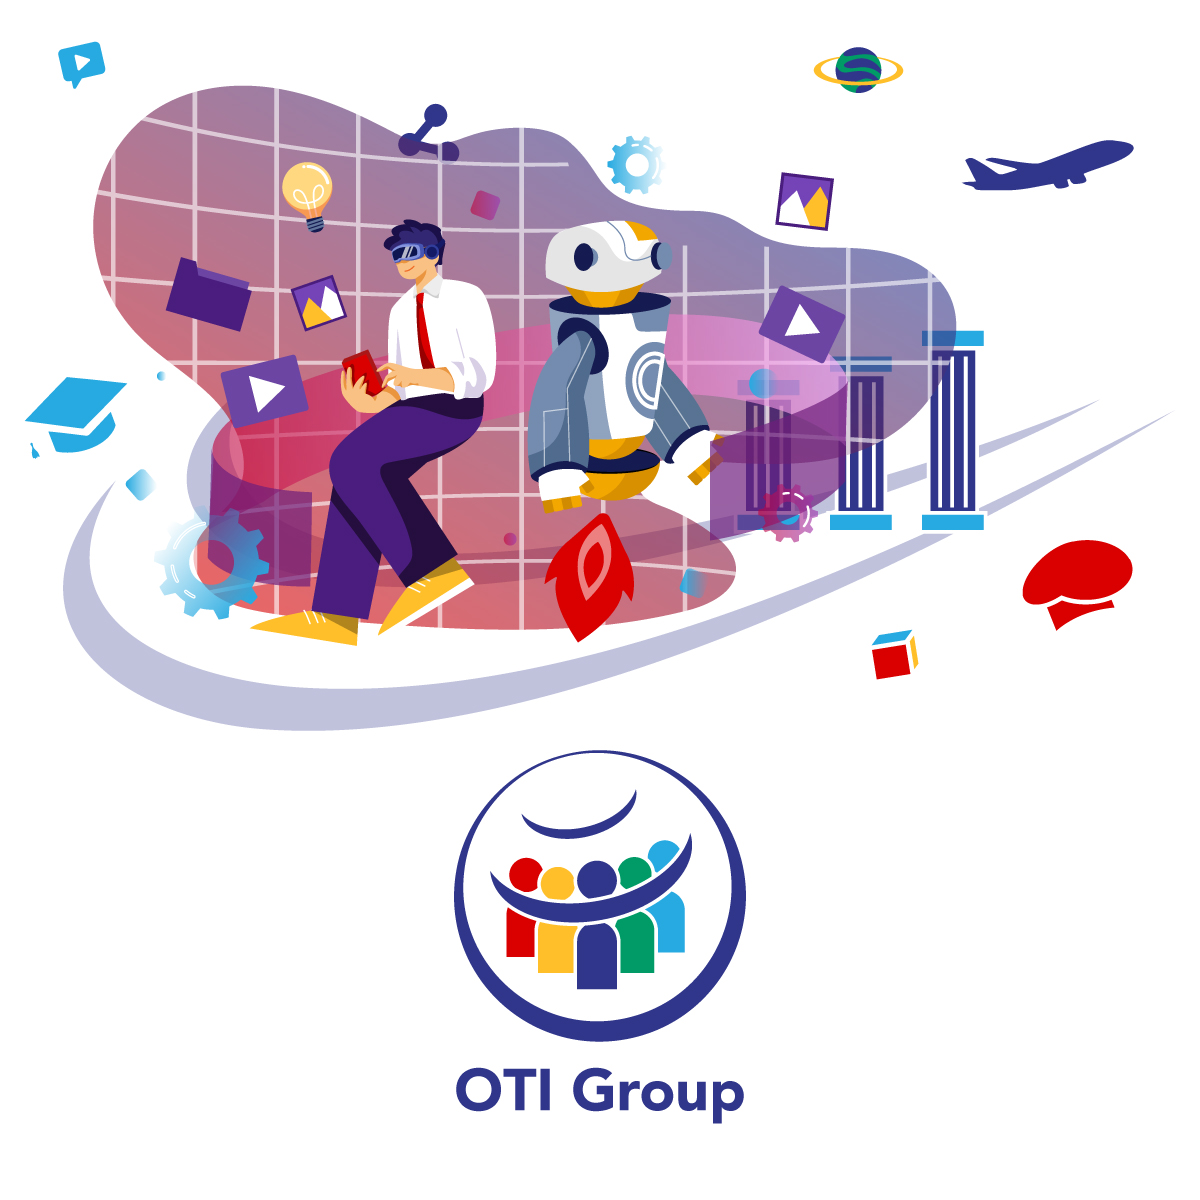 OTI Group Subsidiaries